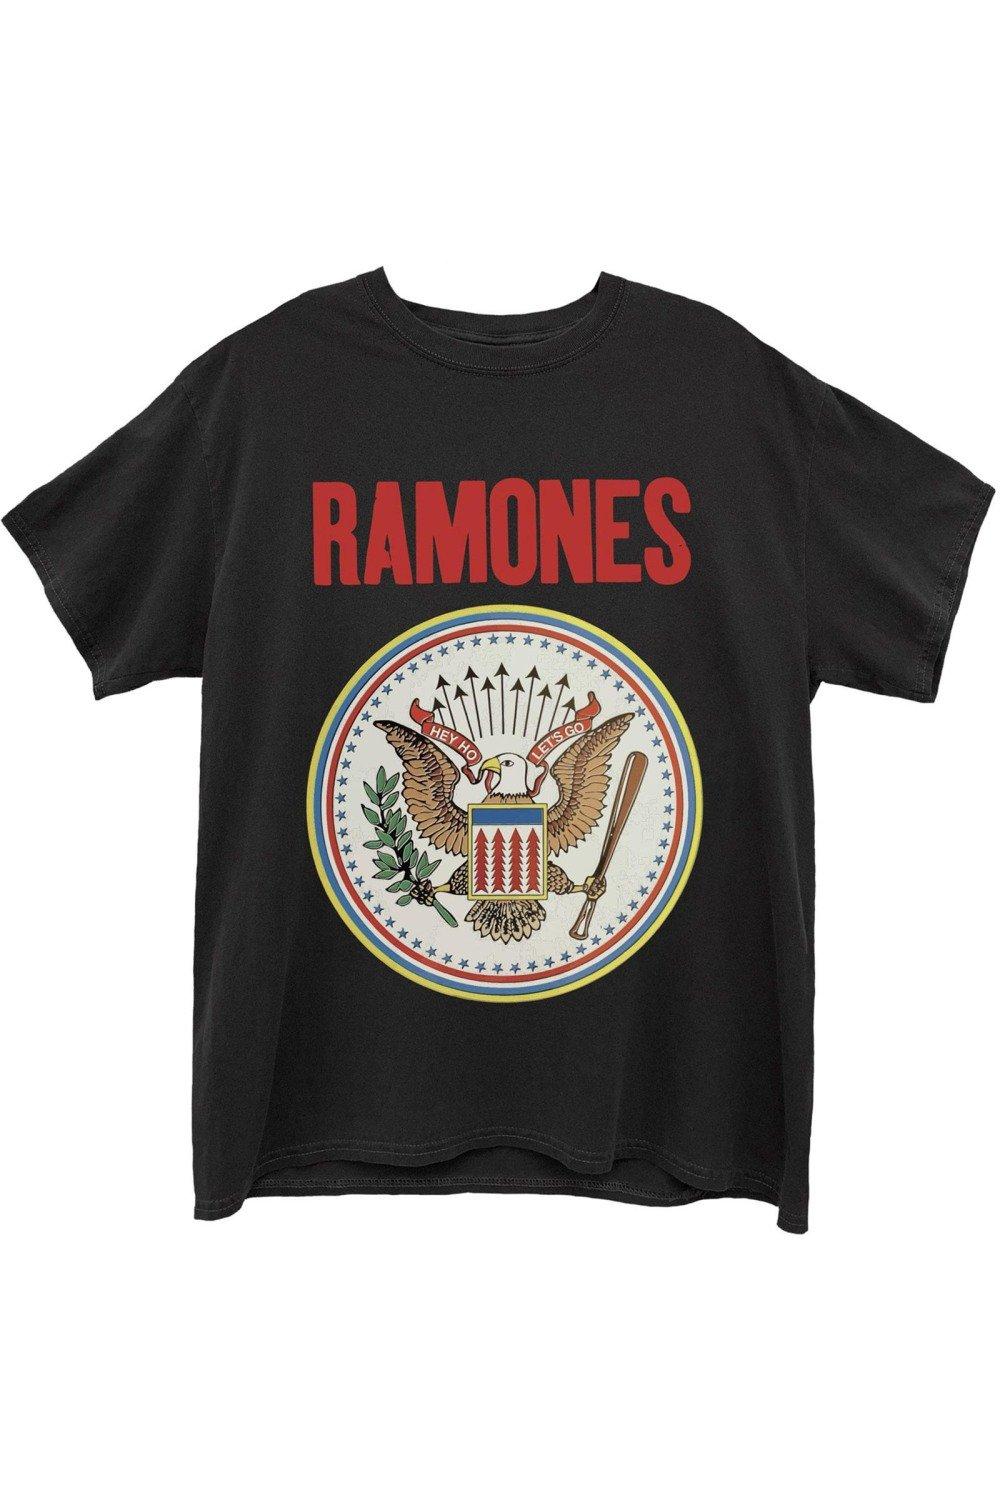 Футболка с печатью Ramones, черный кулон с печатью бельфегора